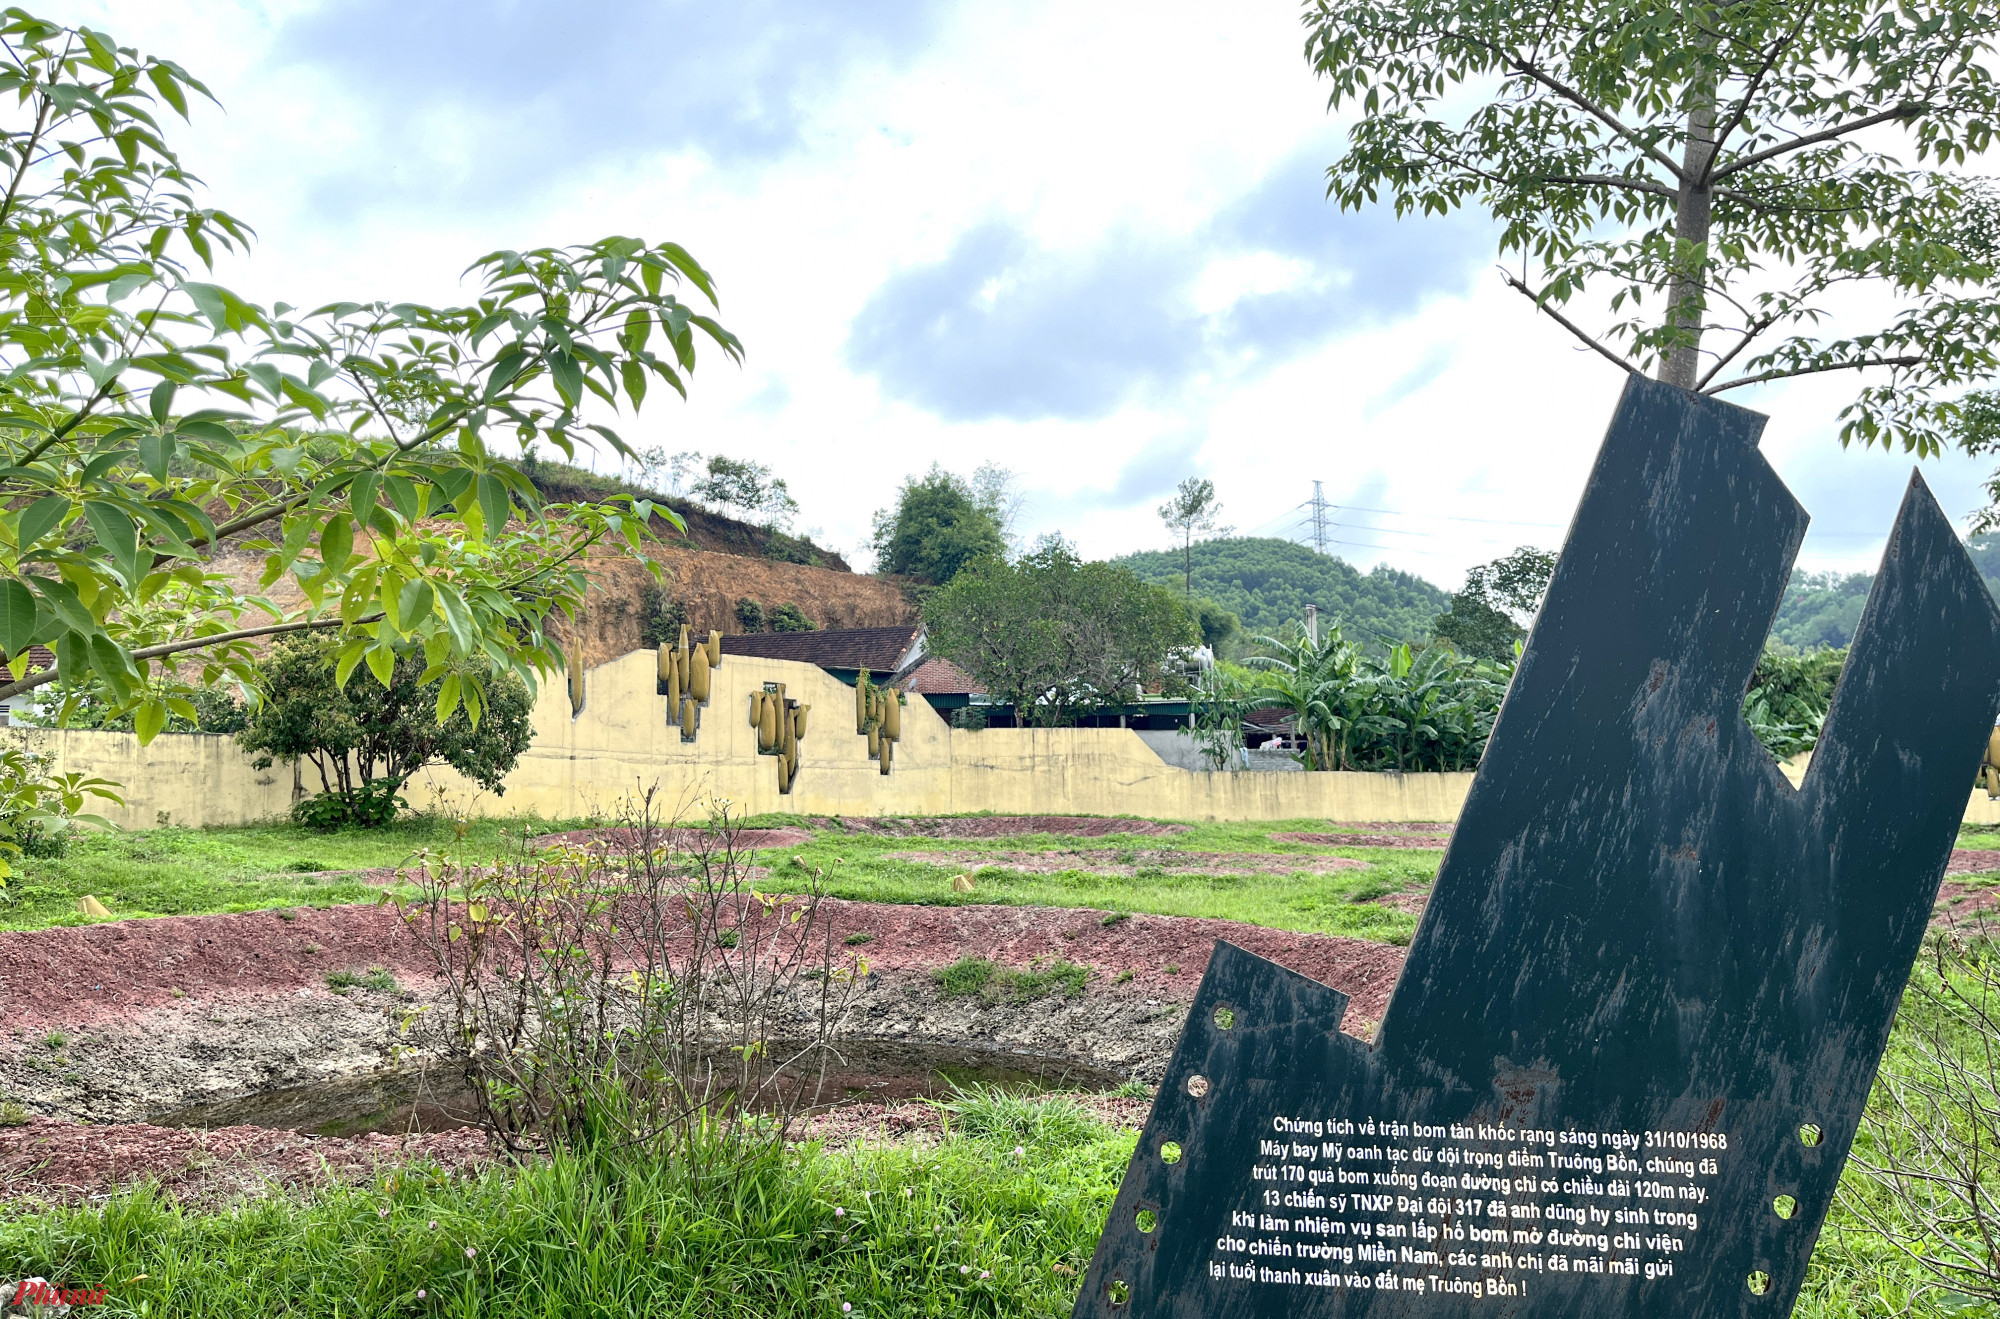 Truông Bồn là một đoạn đèo dốc dài khoảng 5km trên dãy núi Thung Nưa, nằm trên tuyến đường chiến lược 15A (xã Mỹ Sơn, huyện Đô Lương). Nơi đây từng phải hứng chịu hơn 18.900 quả bom các loại và hàng chục ngàn quả tên lửa.